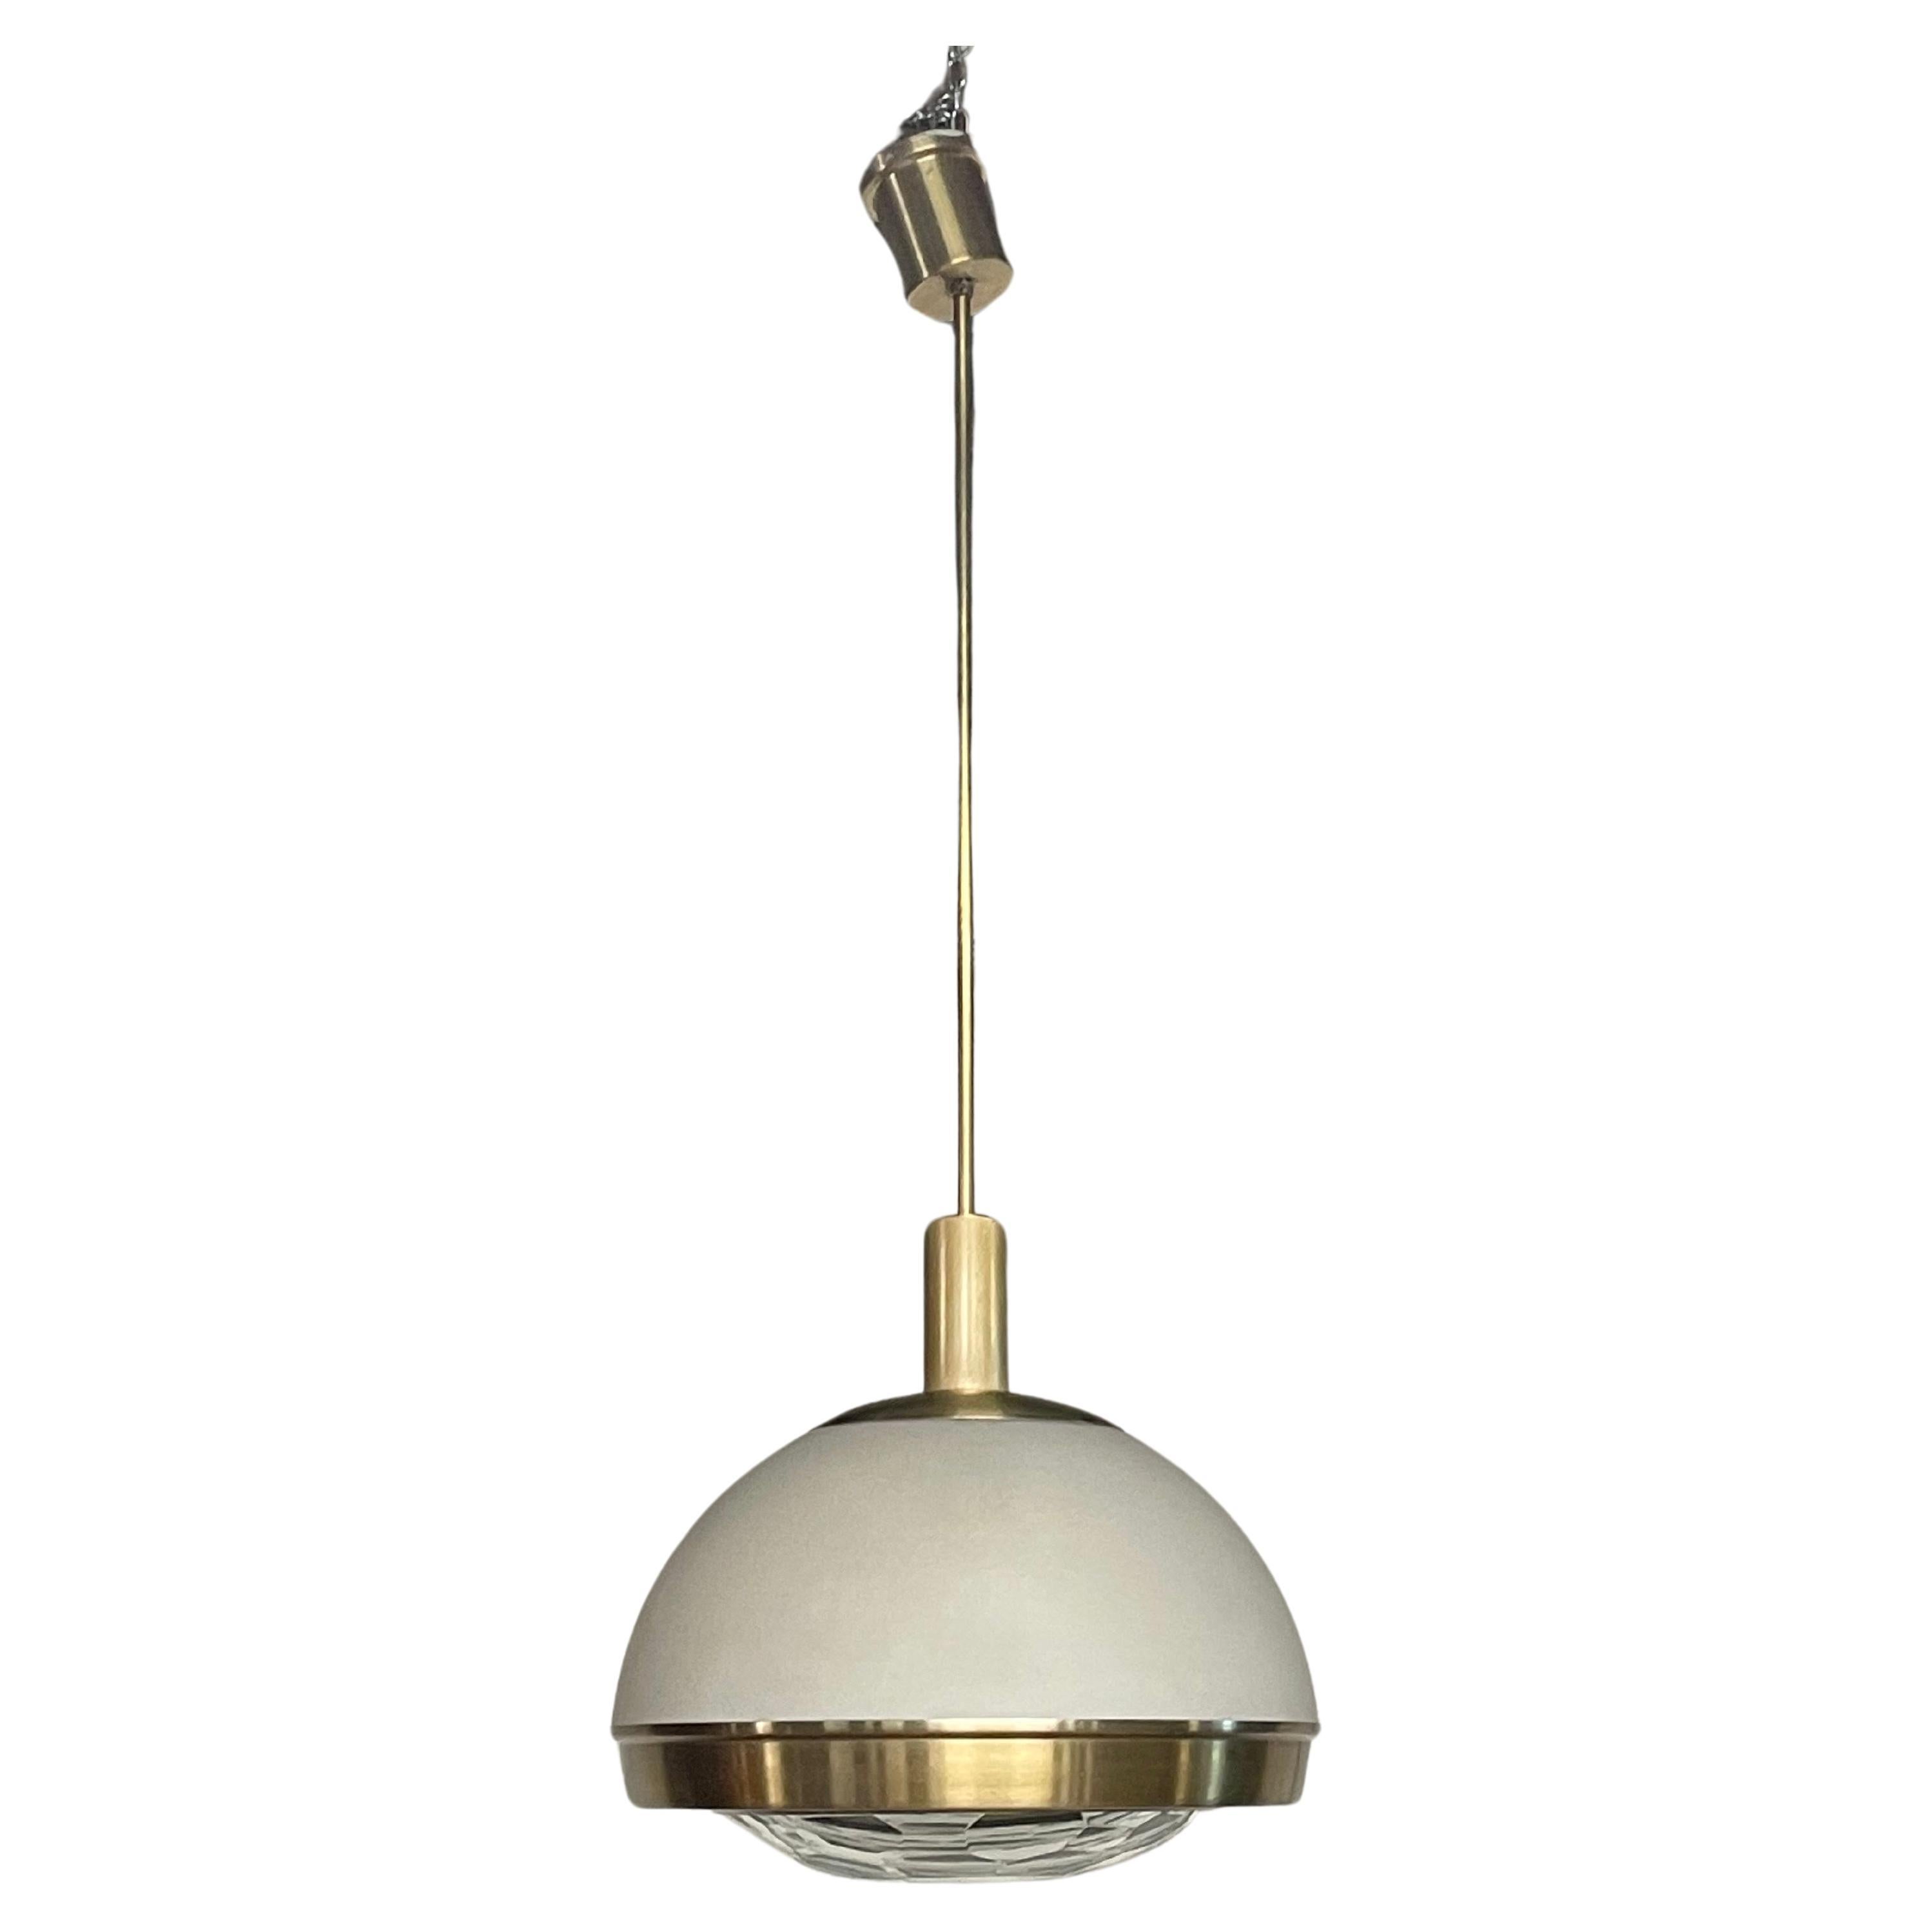 1960s pendant lamp by Pia Guidetti Crippa for Lumi